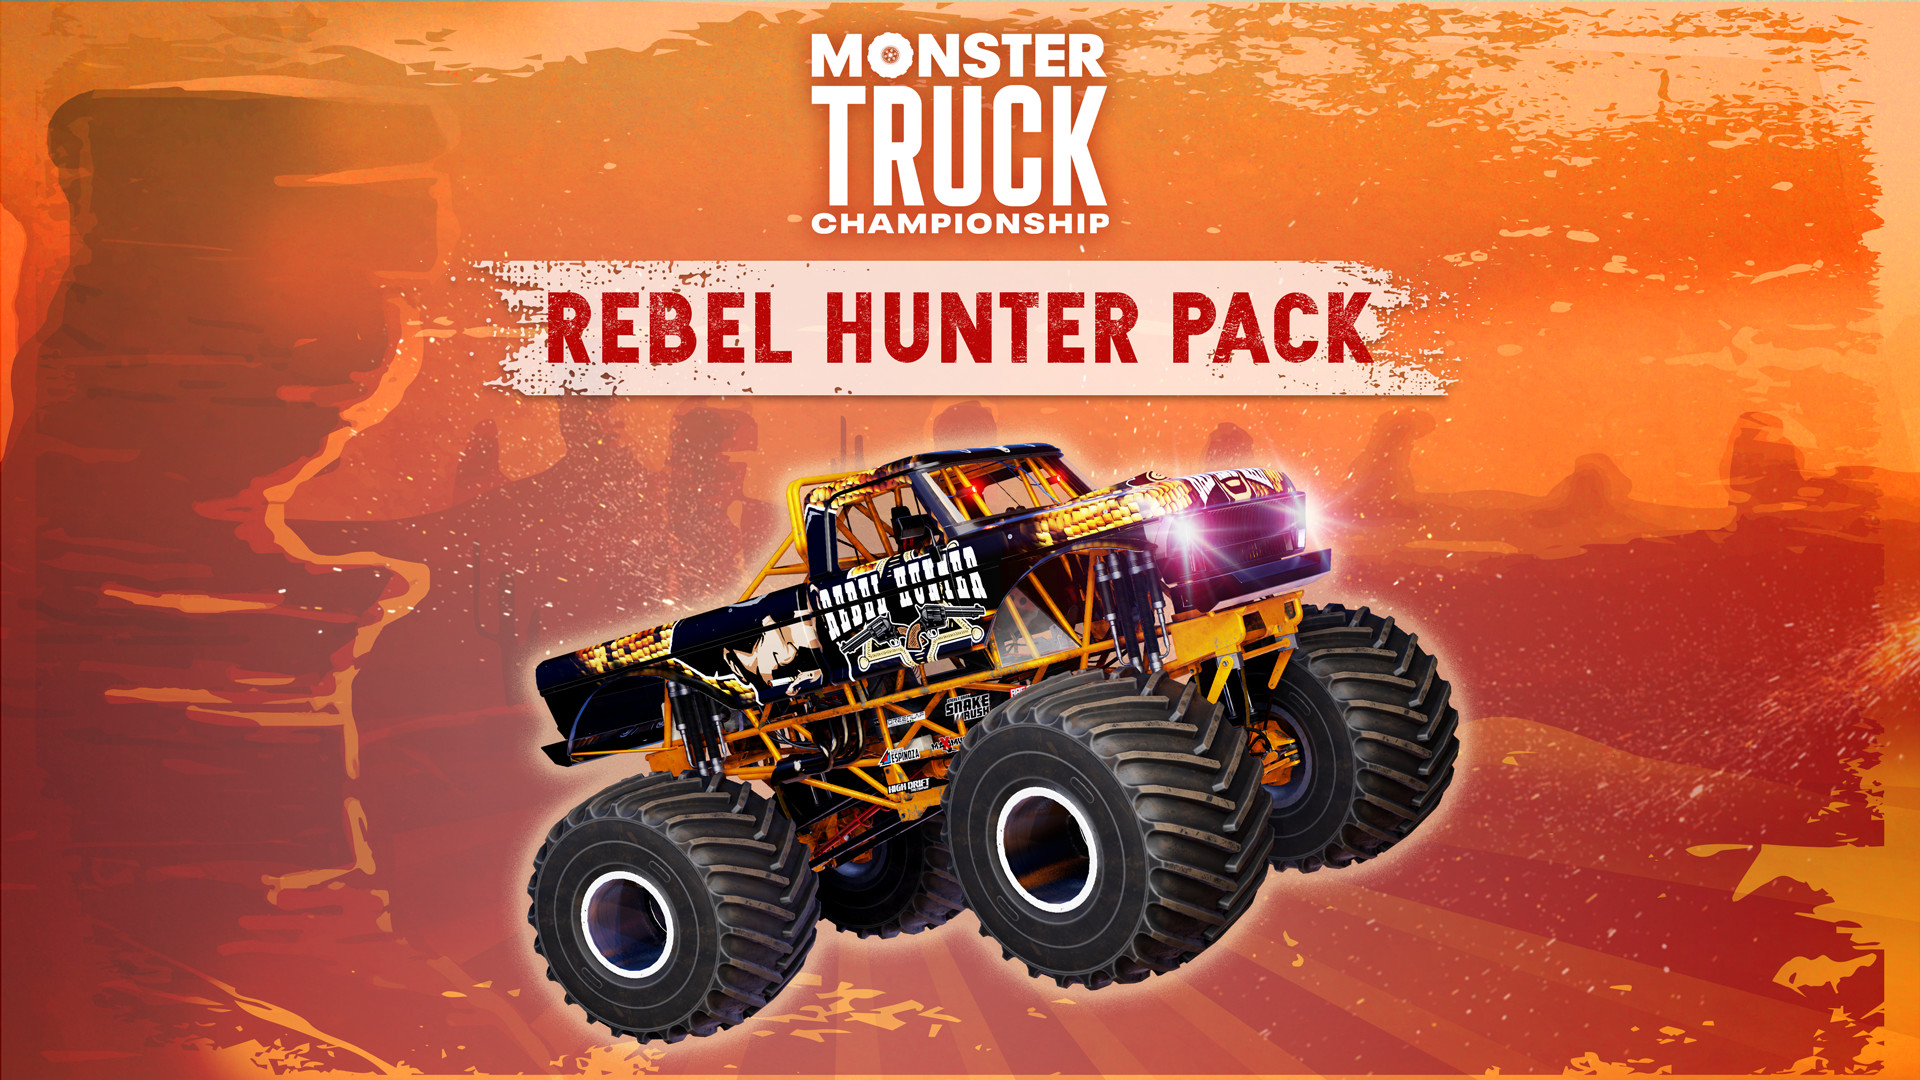 Monster Truck Championship - Rebel Hunter Pack DLC Steam CD Key $10.16